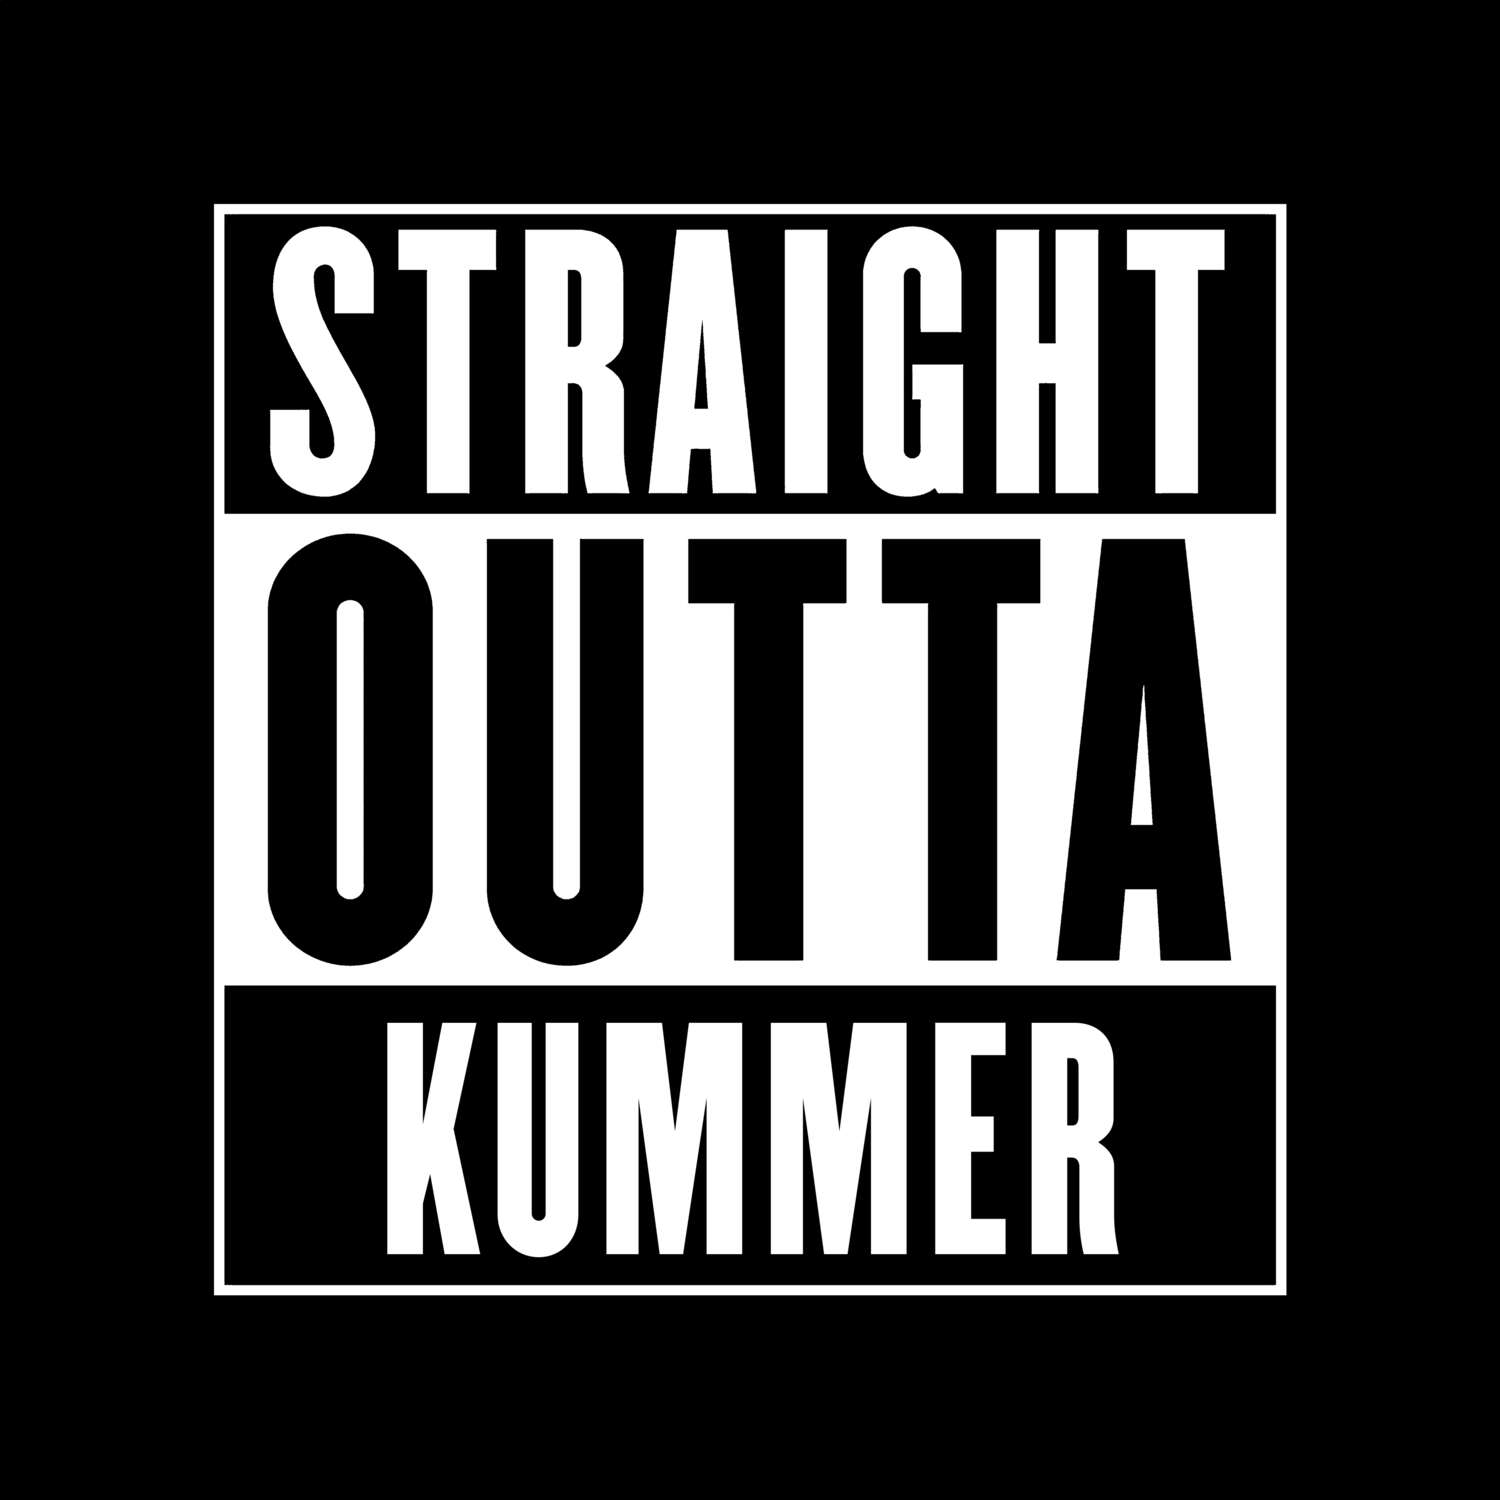 Kummer T-Shirt »Straight Outta«